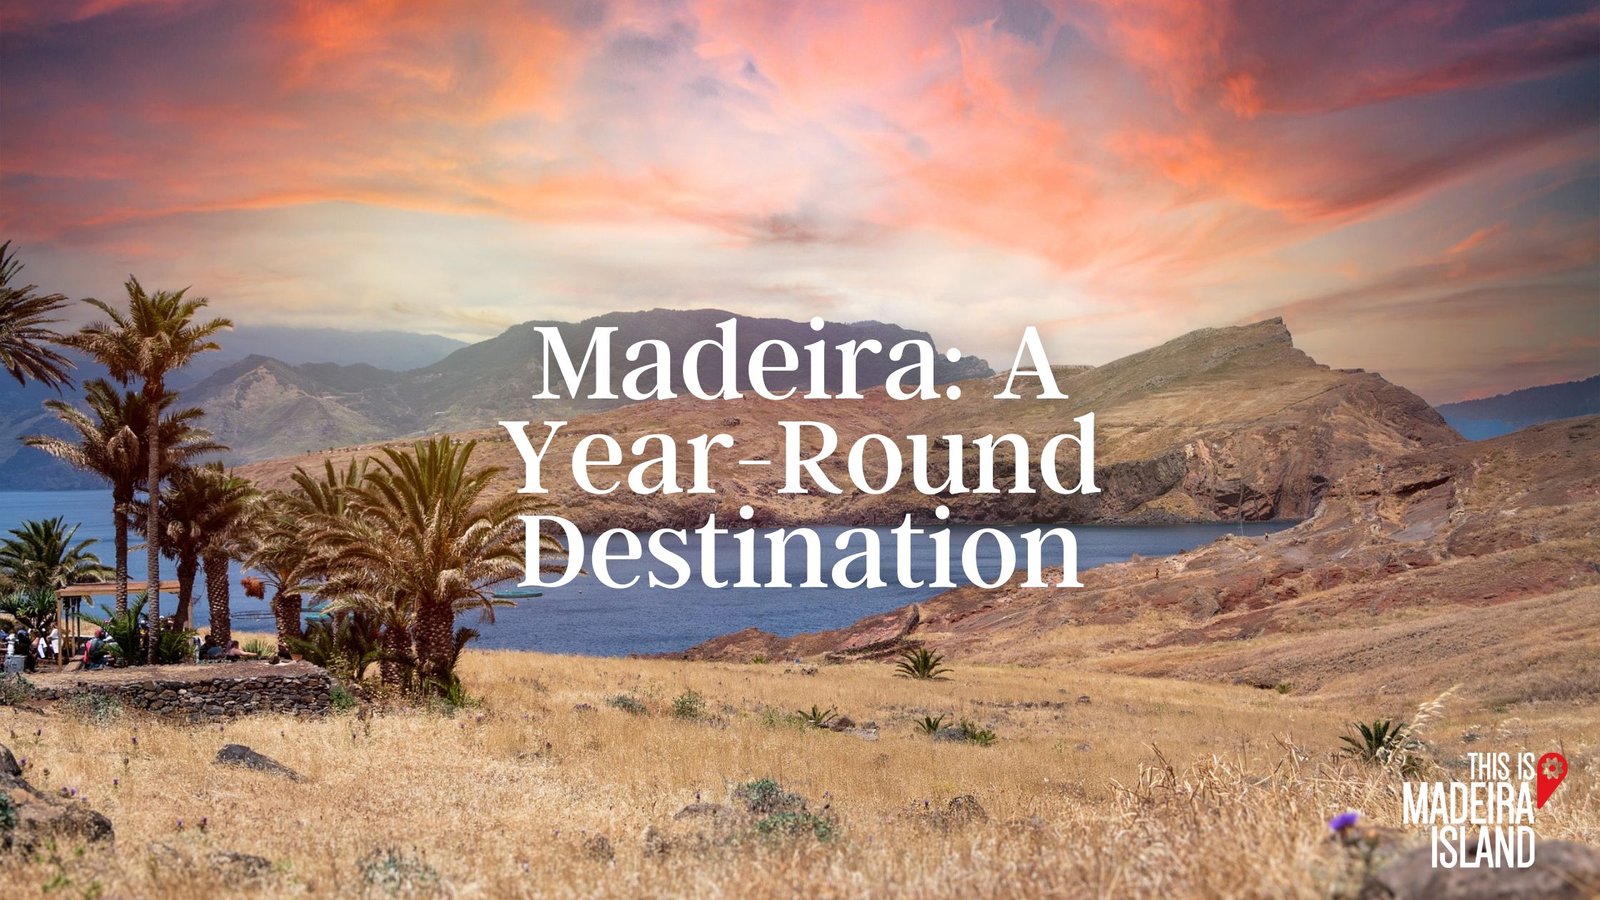 Madeira: A Year-Round Destination